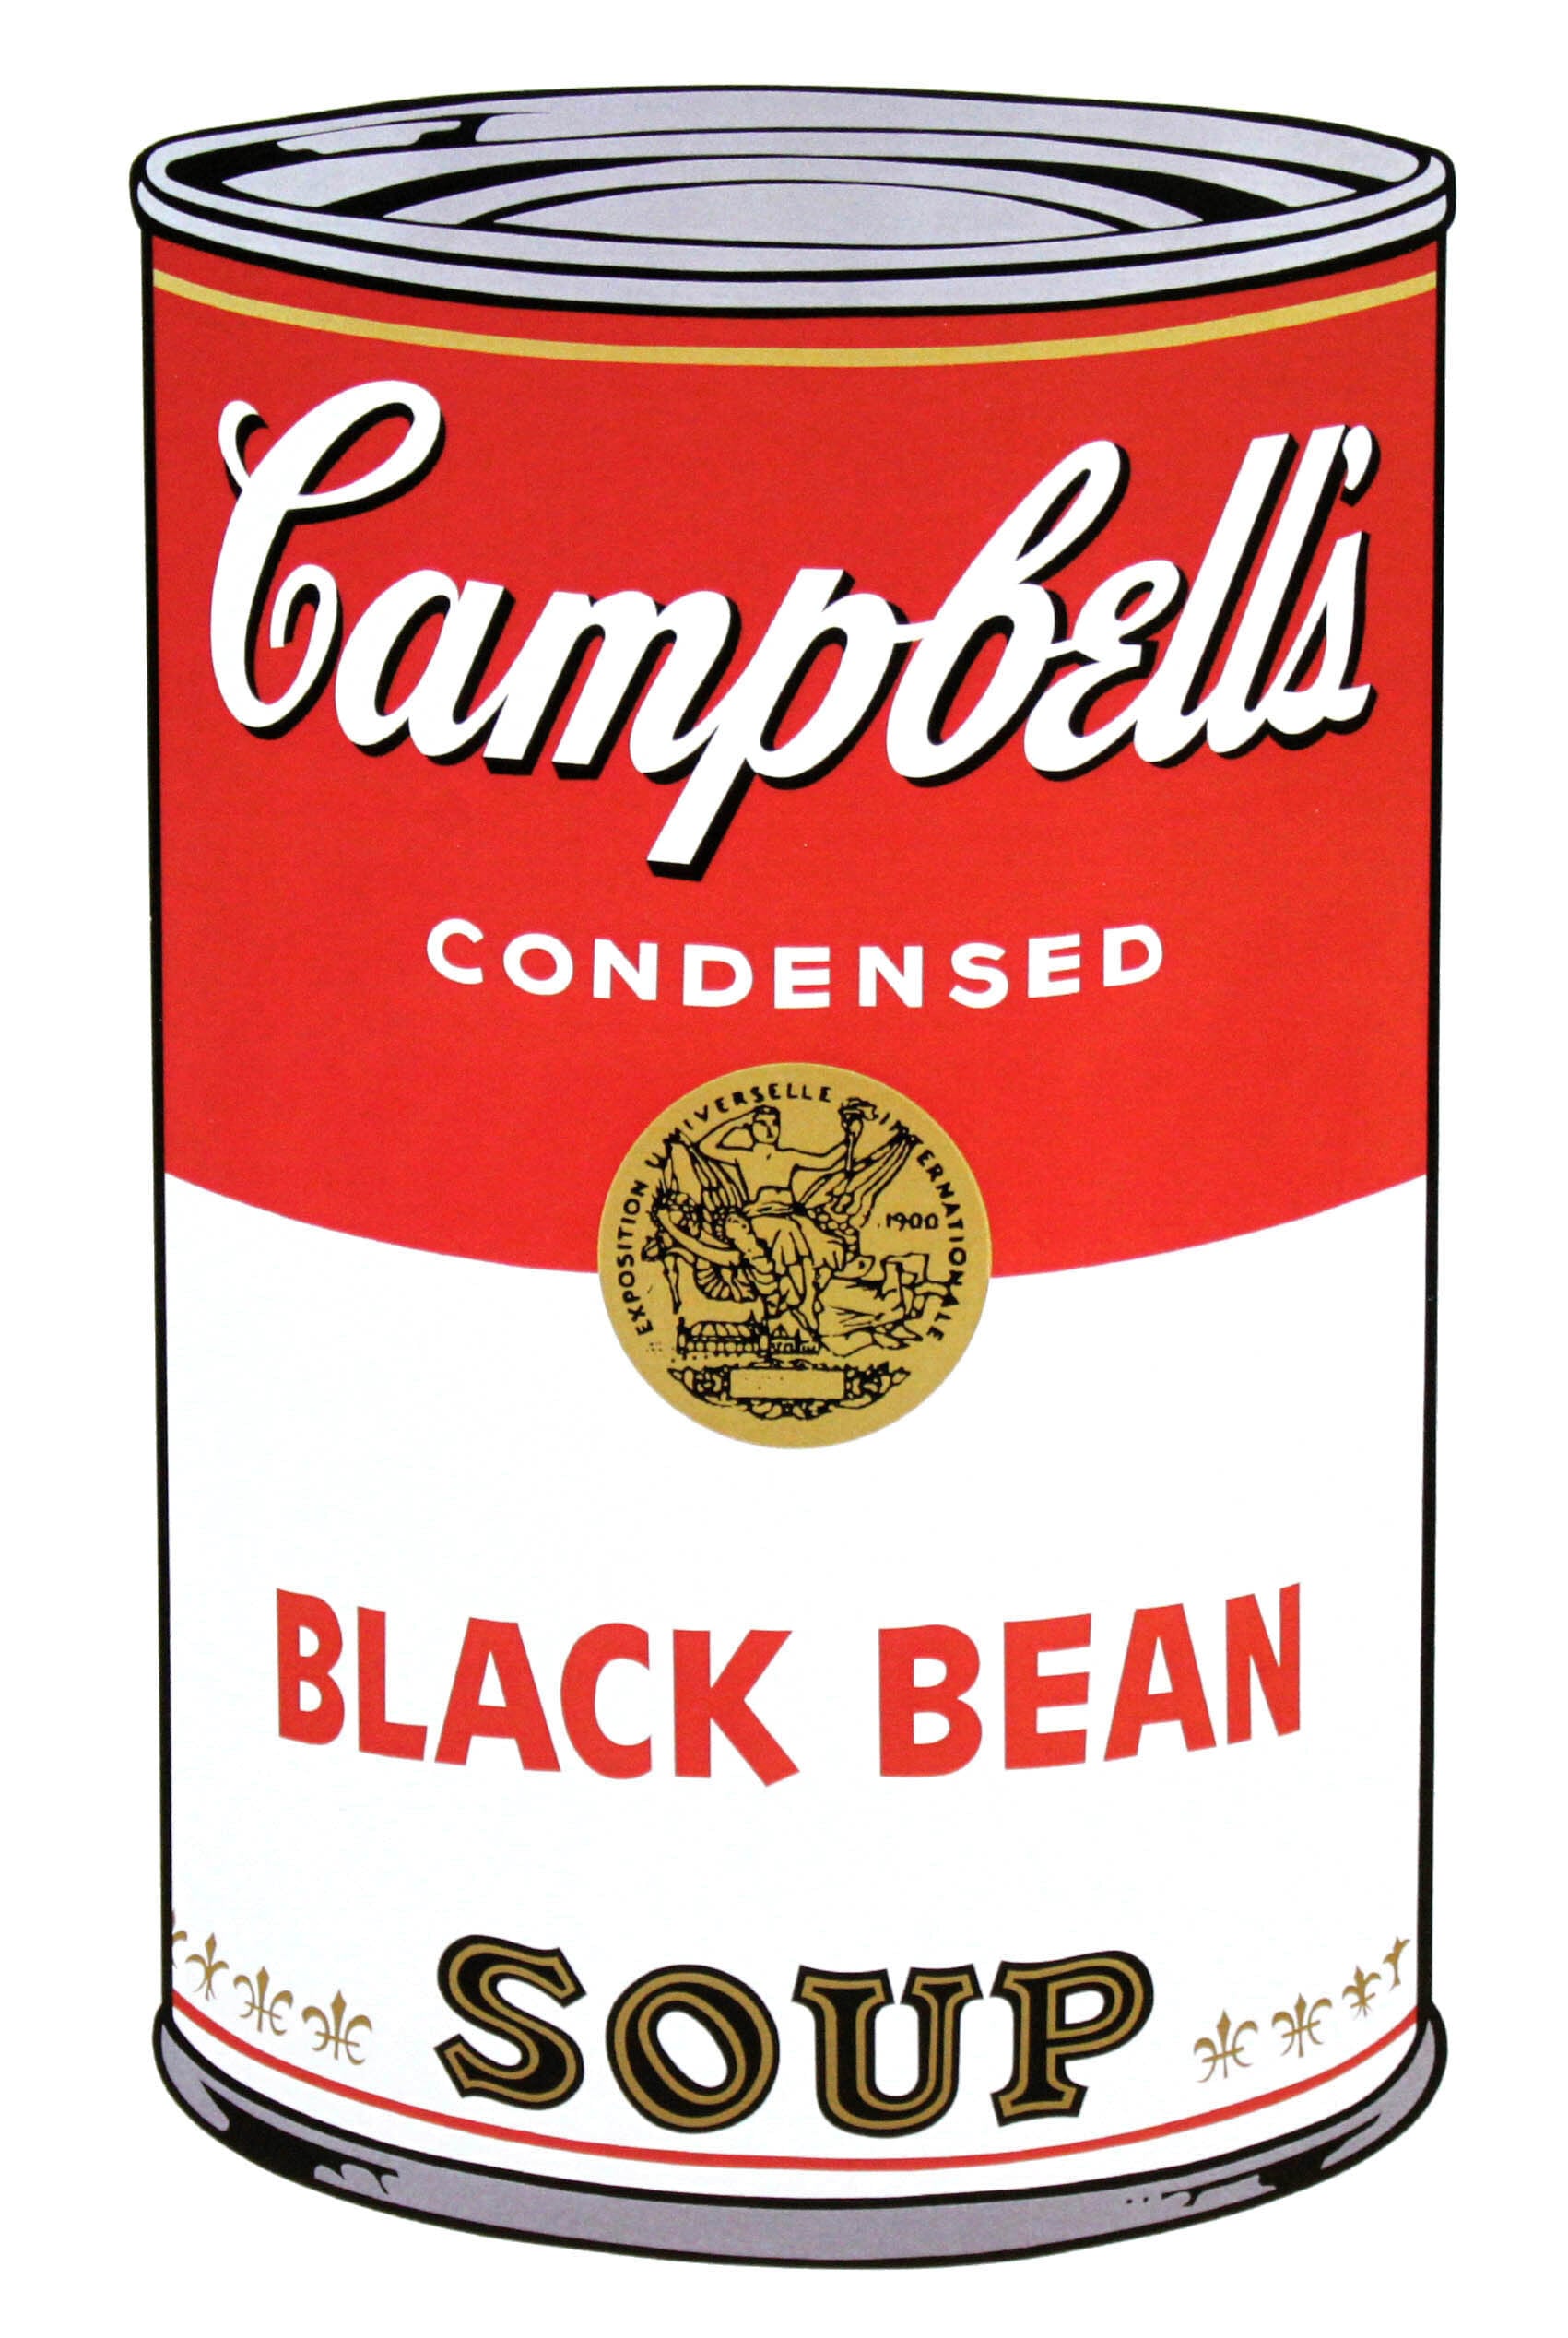 アンディ・ウォーホル「キャンベル・スープ(ブラックビーン)1968」展示用フック付大型サイズジークレ ポップアート 絵画